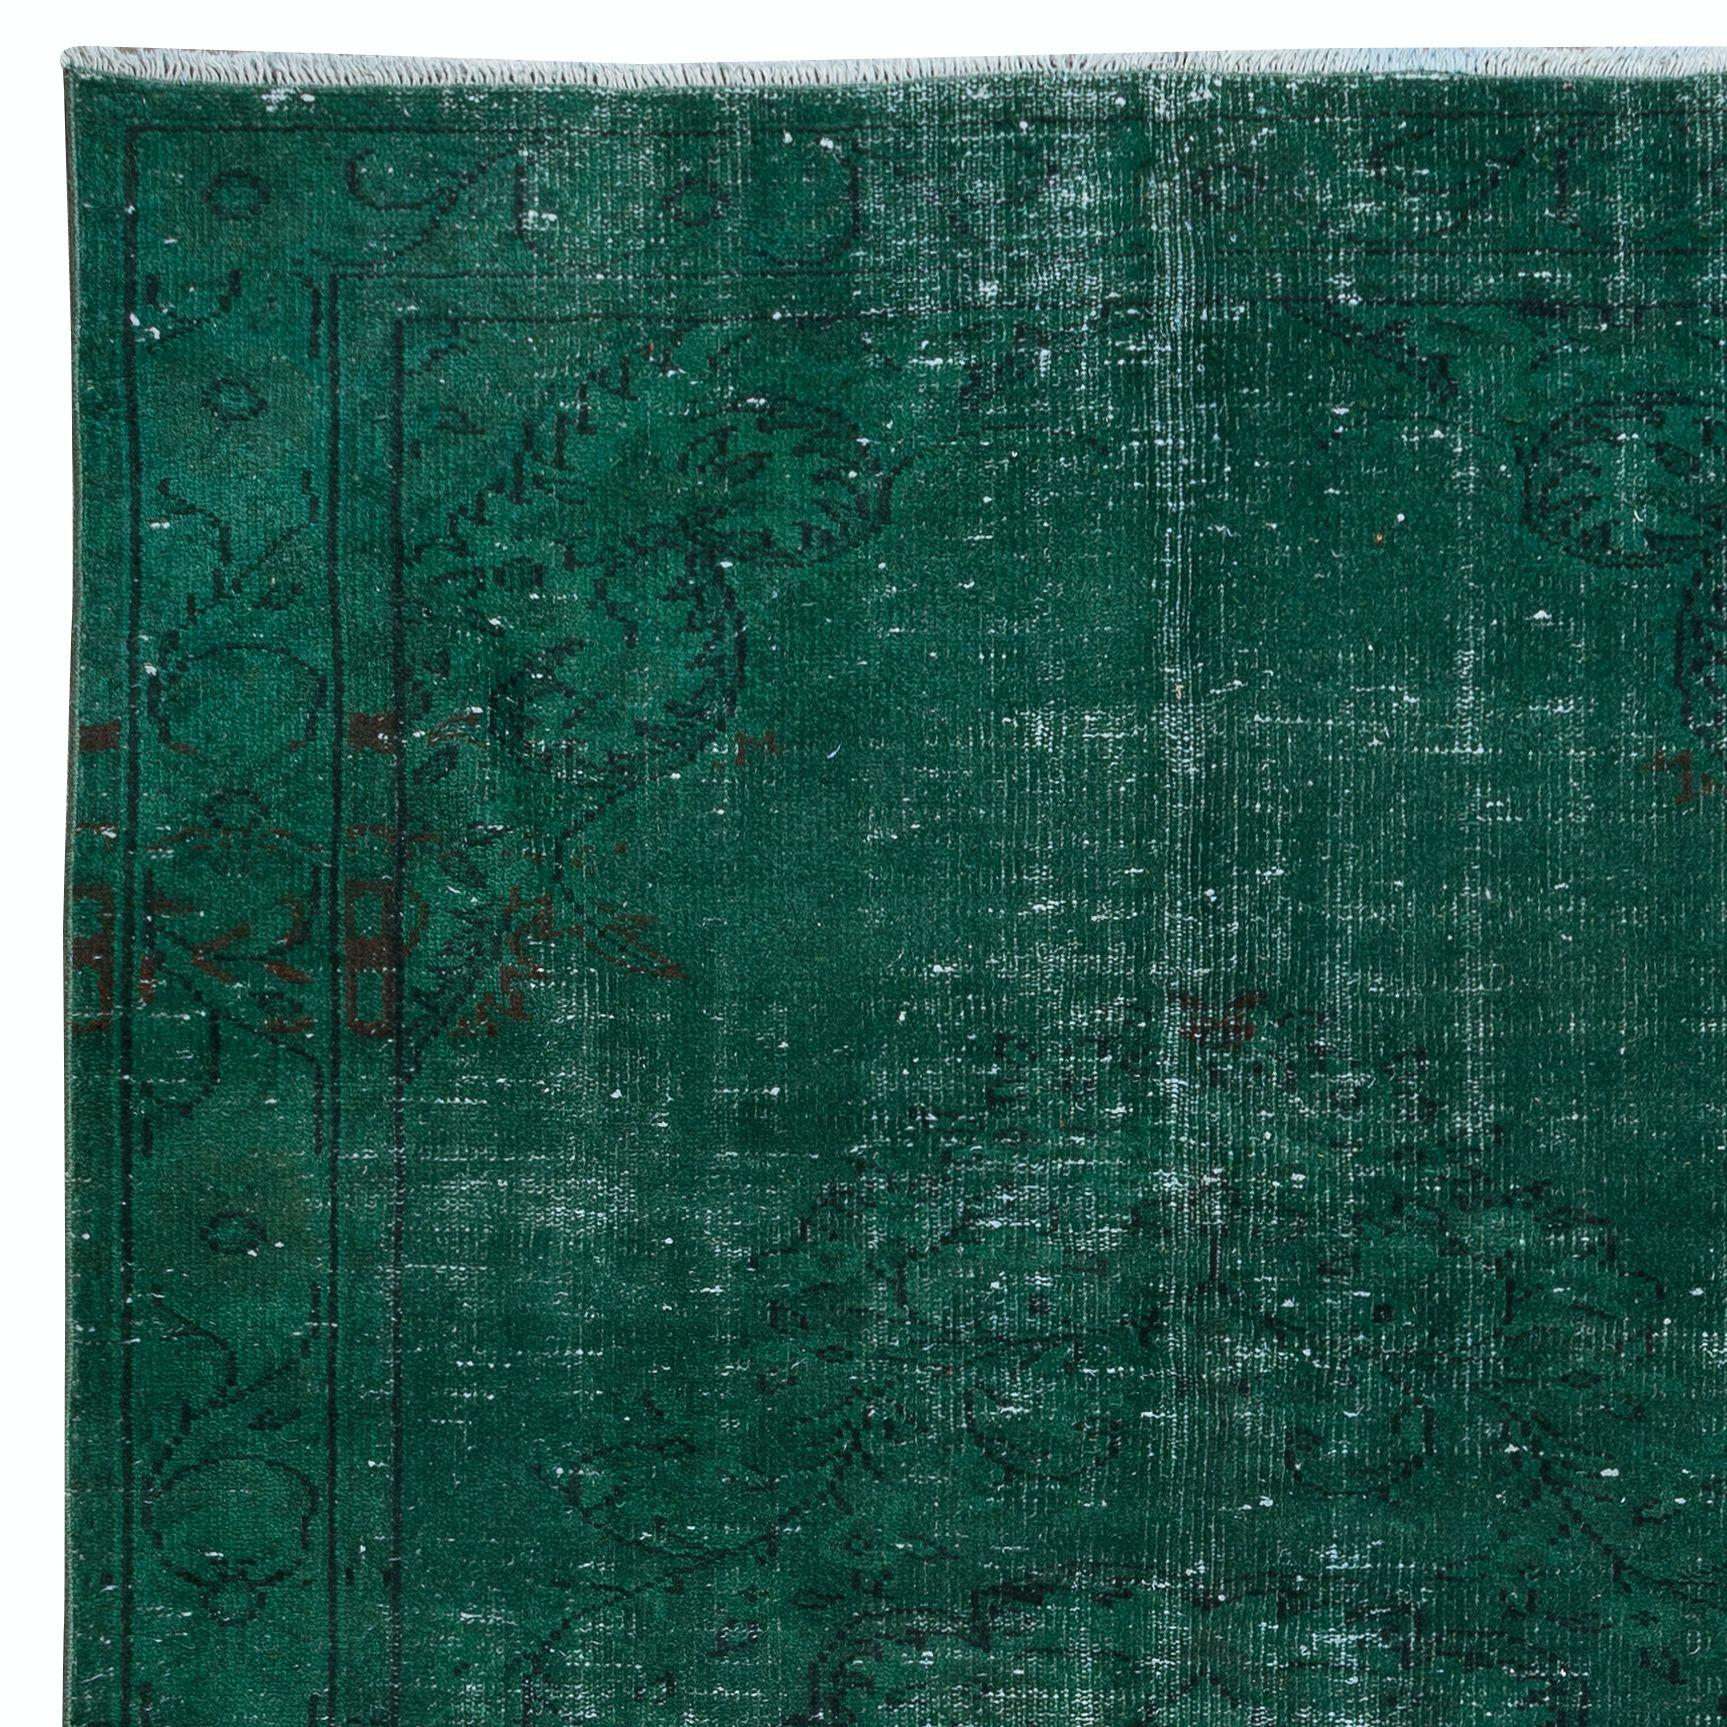 Hand-Woven 5.6x9.5 Ft Handmade Forest Green Area Rug, Modern Medallion Design Carpet For Sale